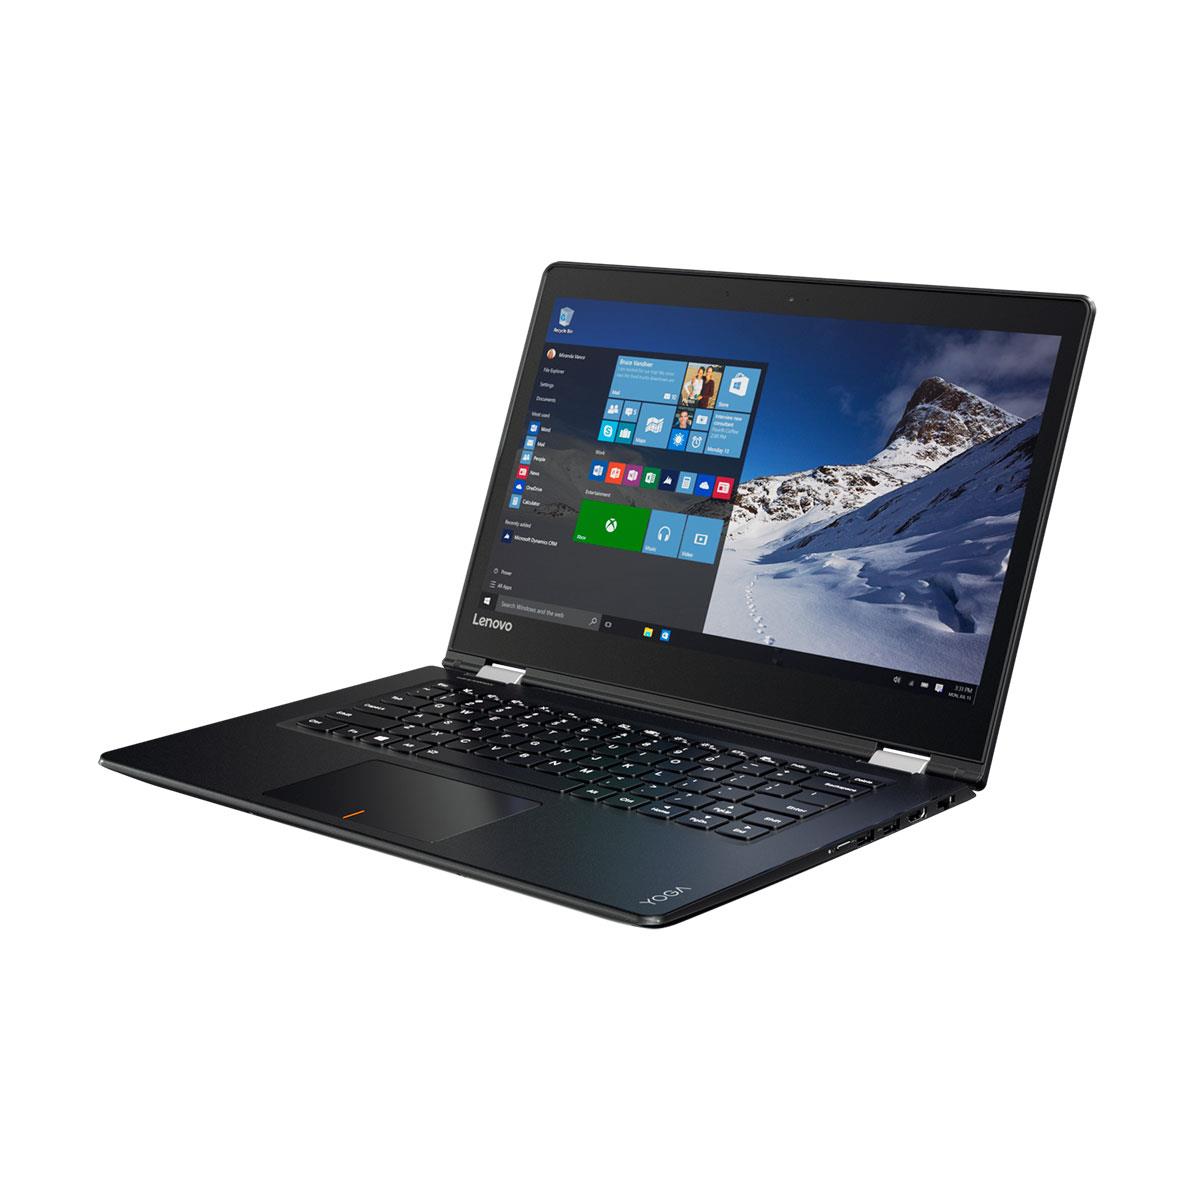 Notebook Lenovo Yoga 520 2 em 1 Tela 14 Touchscreen, Intel i5